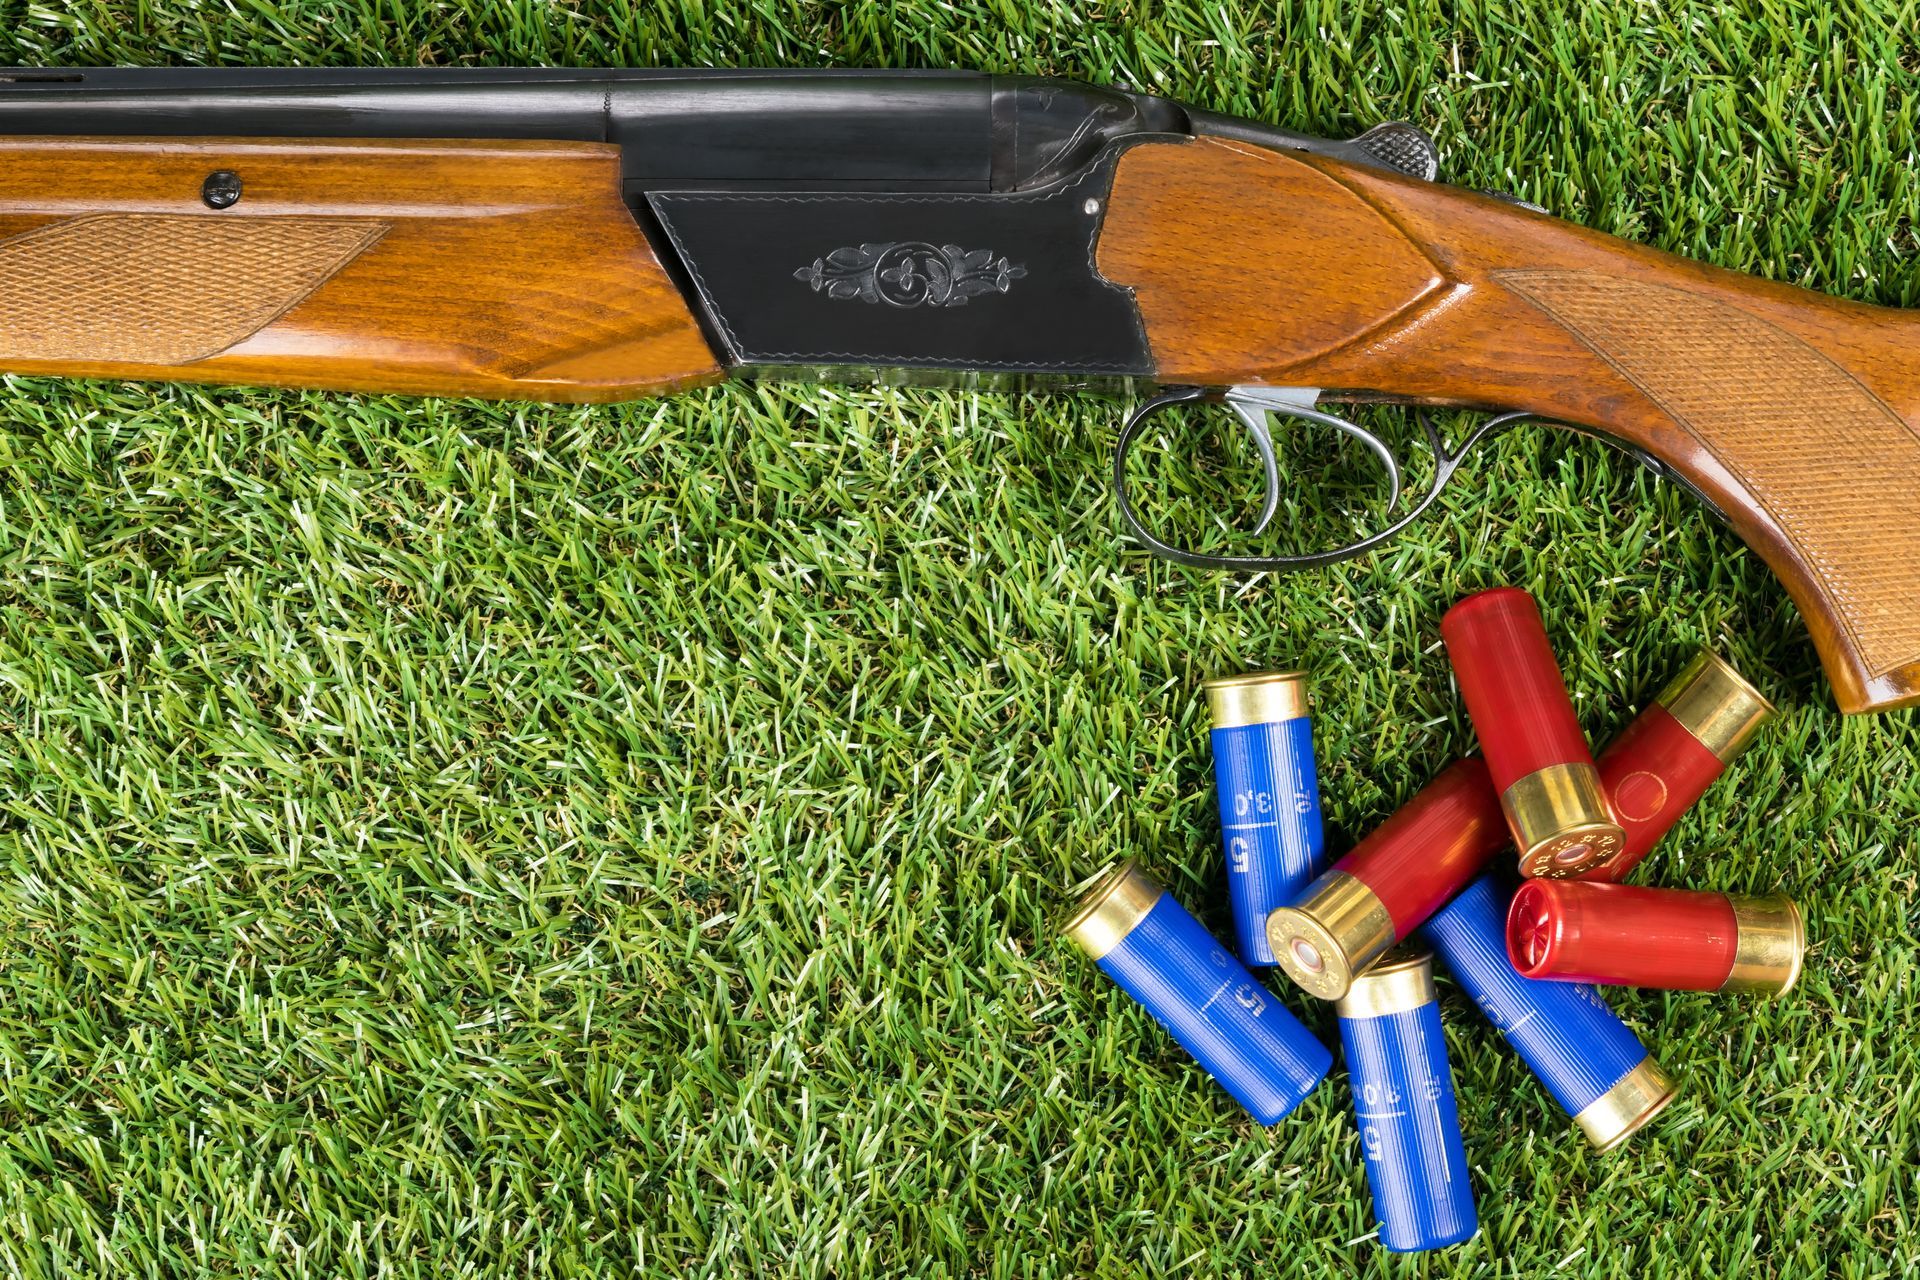 Cartouches et fusil en bois sur une pelouse